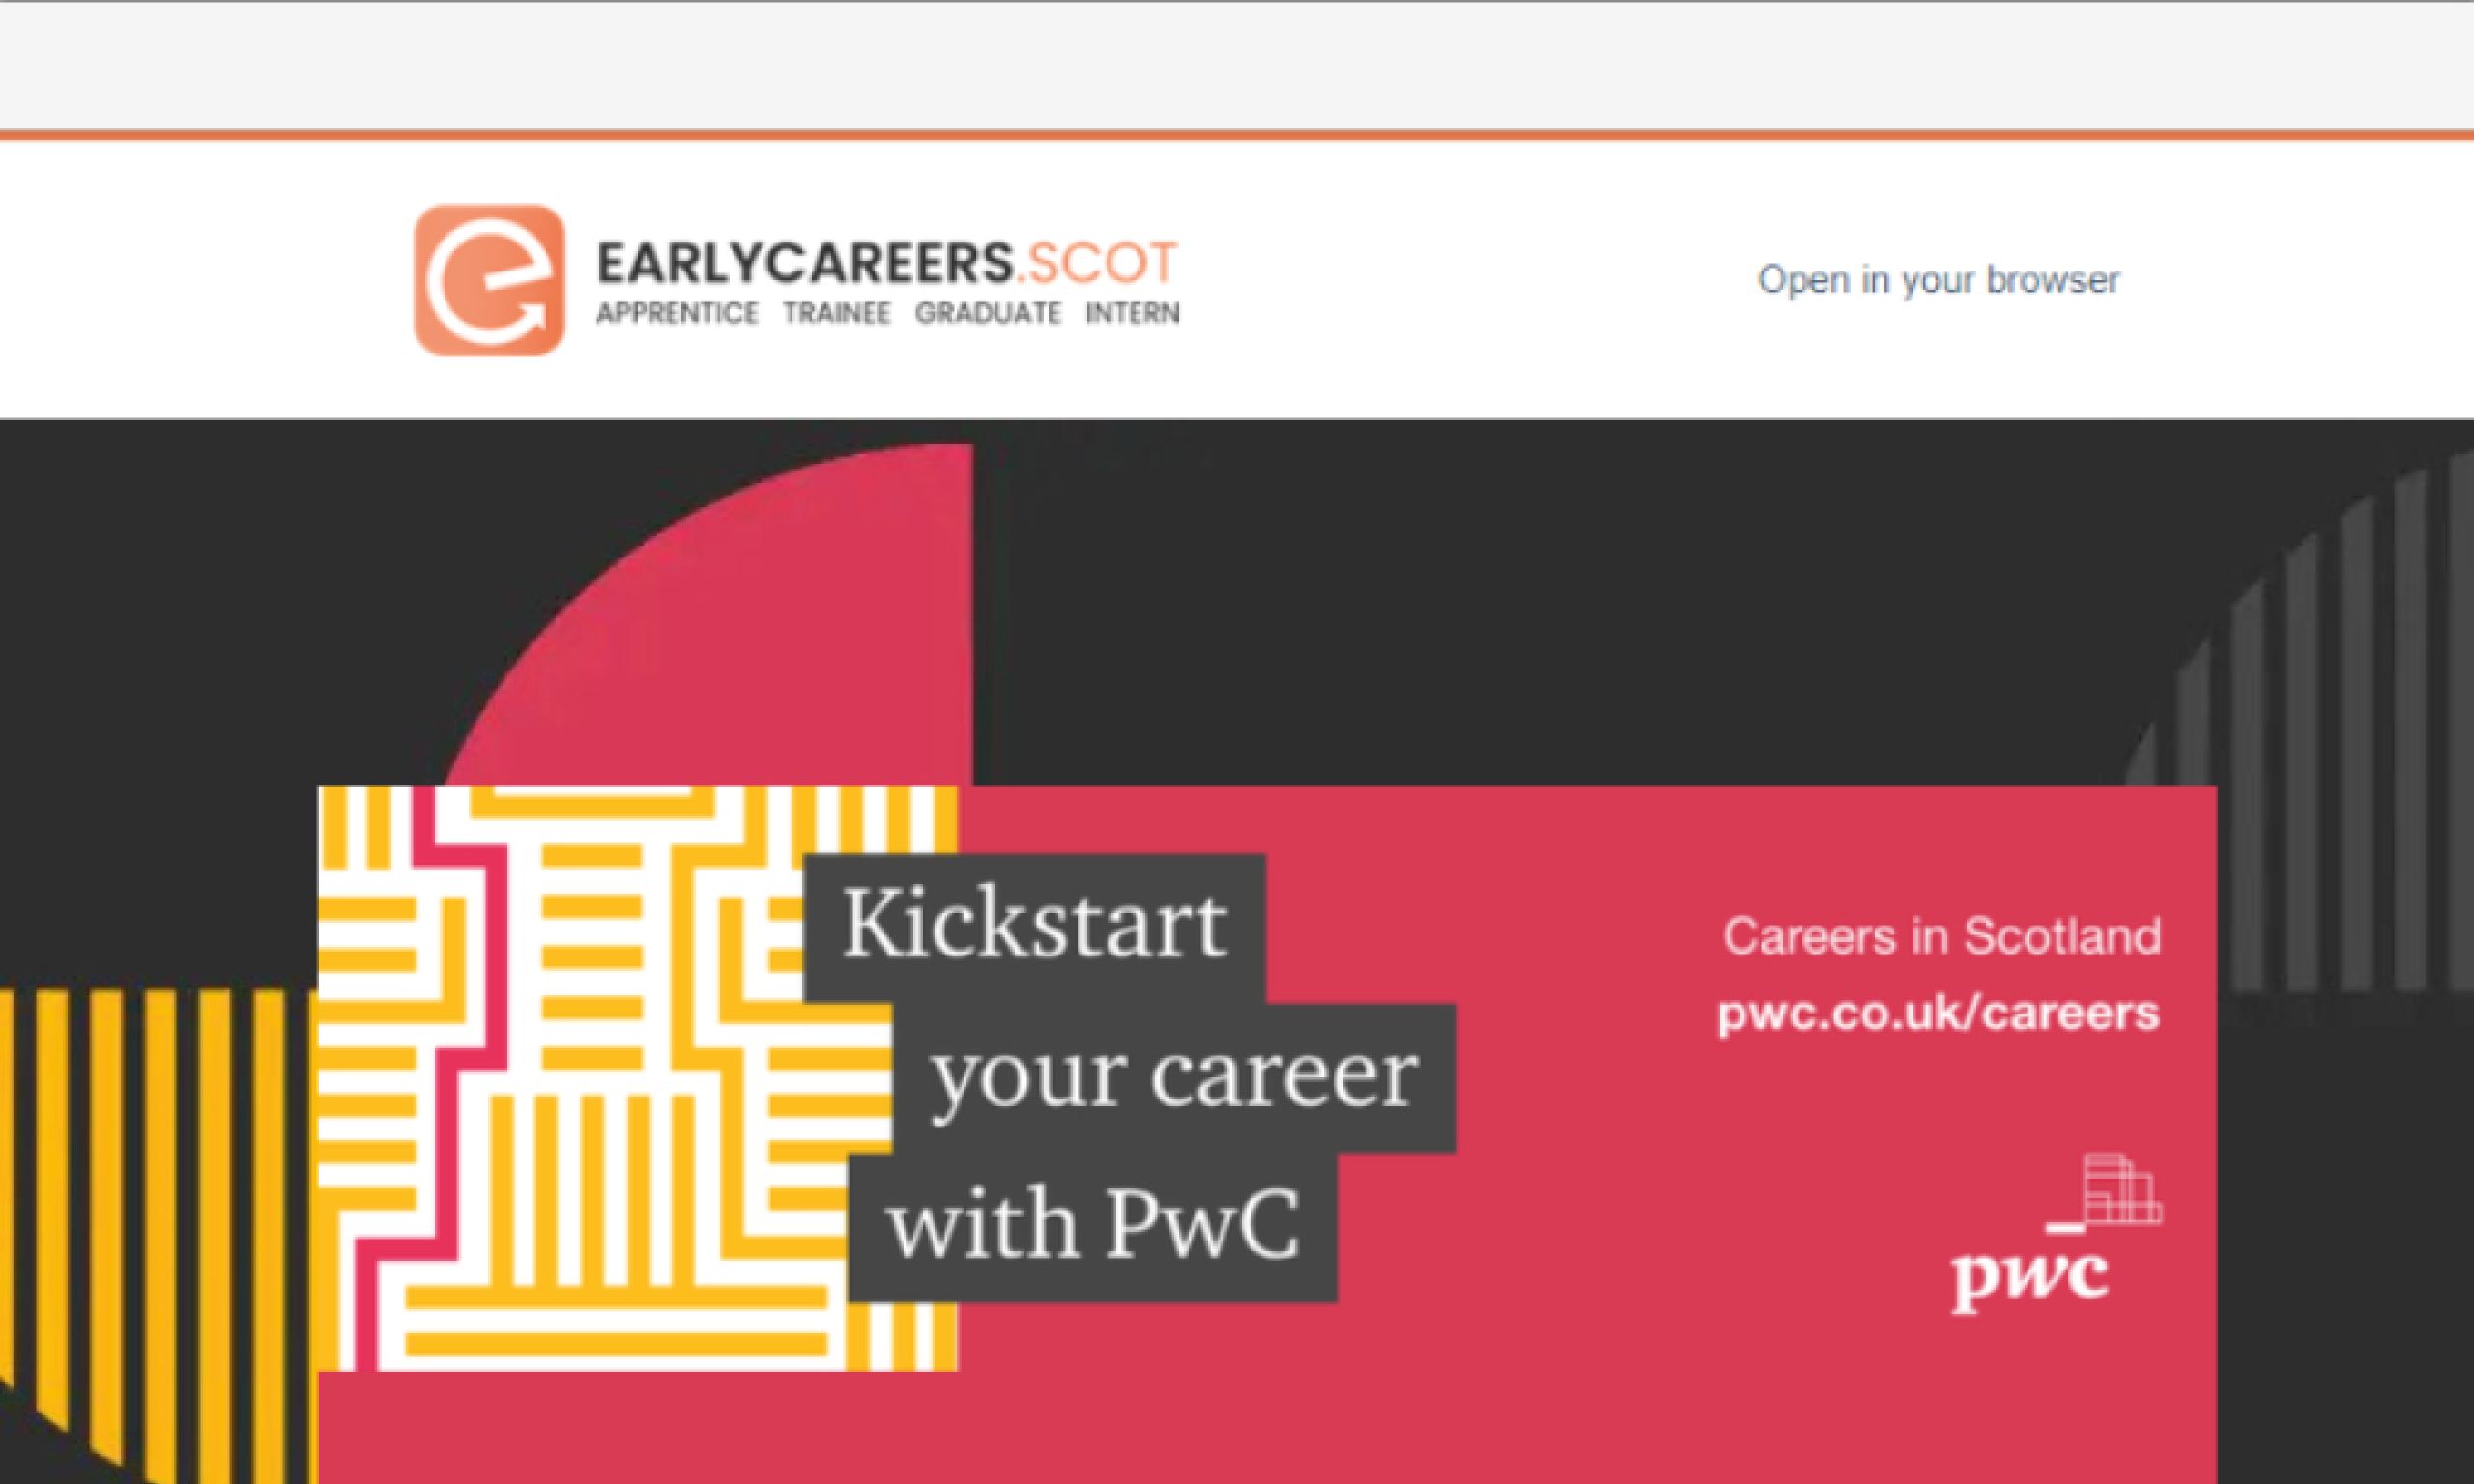 Kickstart your career with PwC